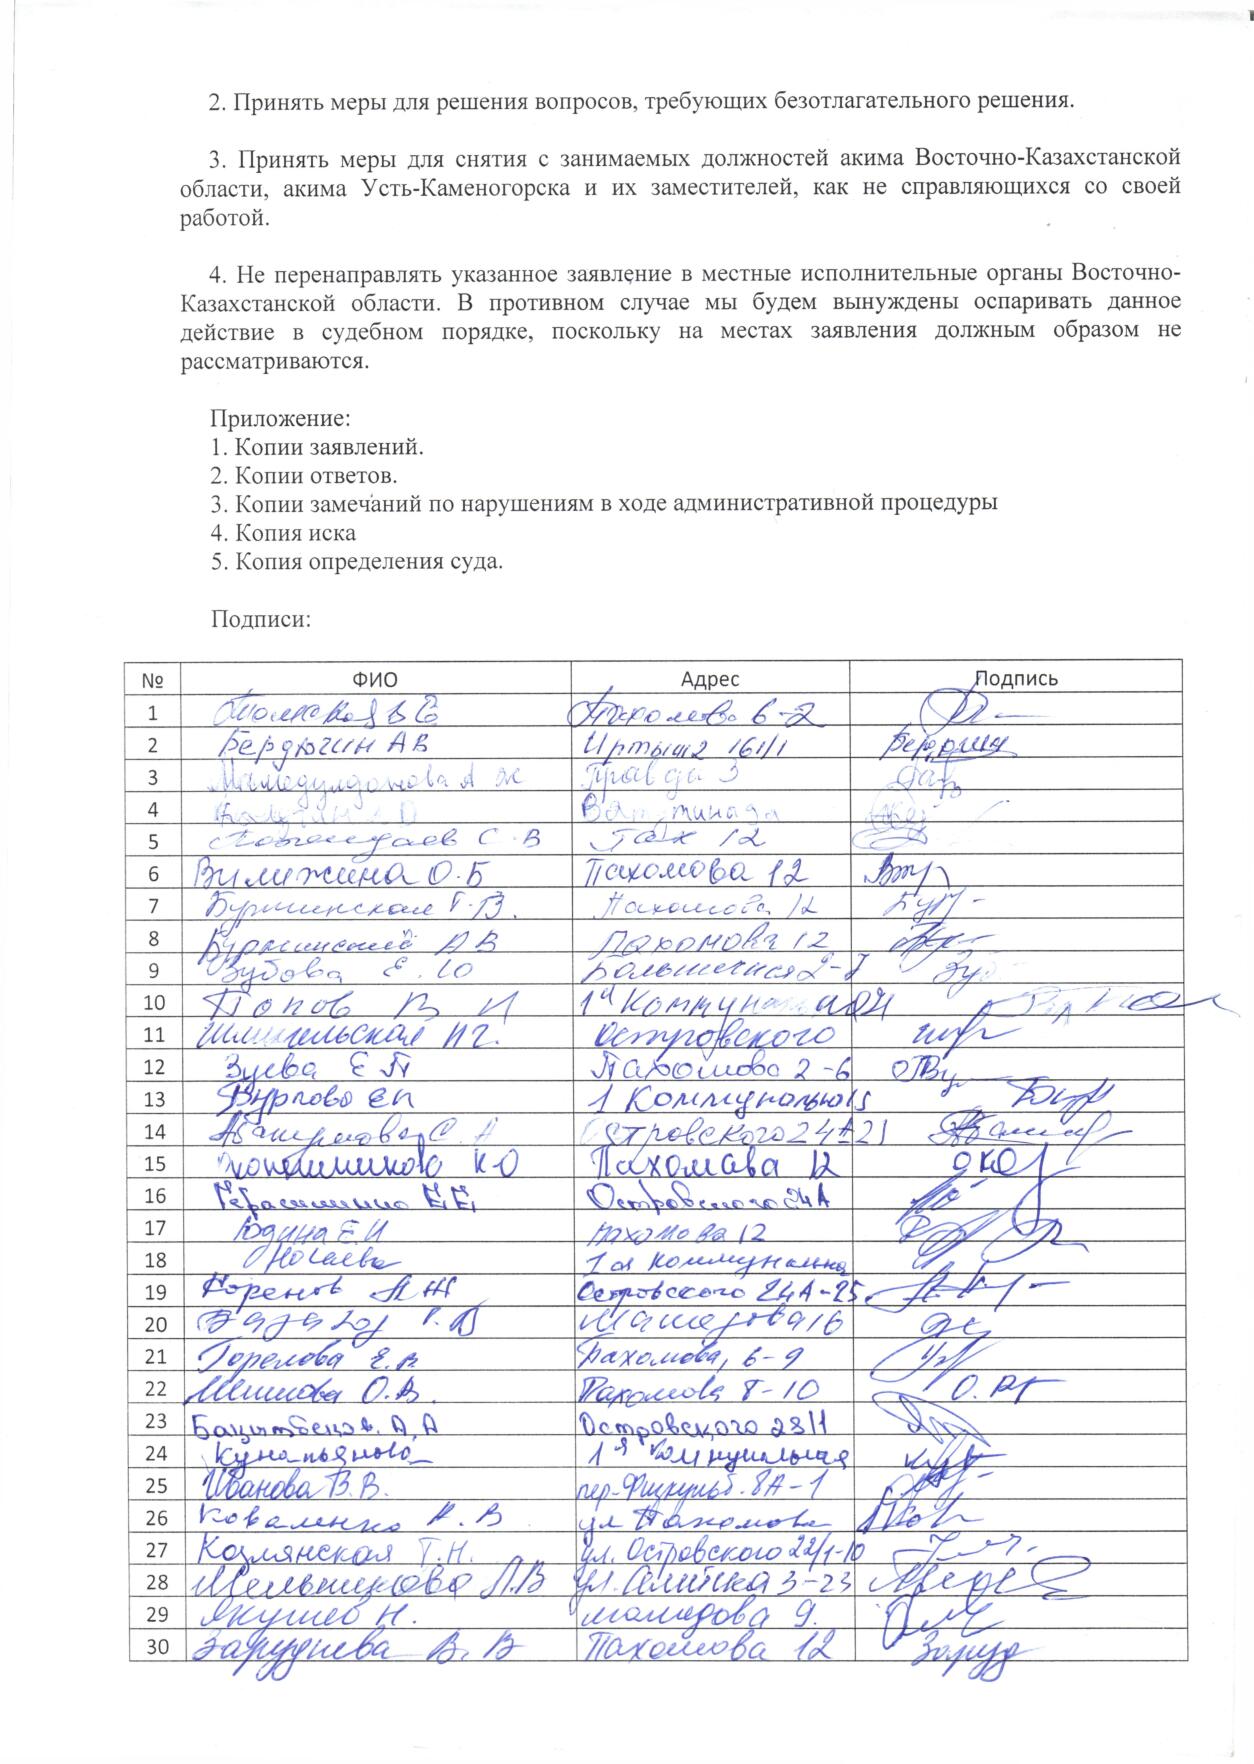 Жители требуют cменить акимов ВКО и Усть-Каменогорска